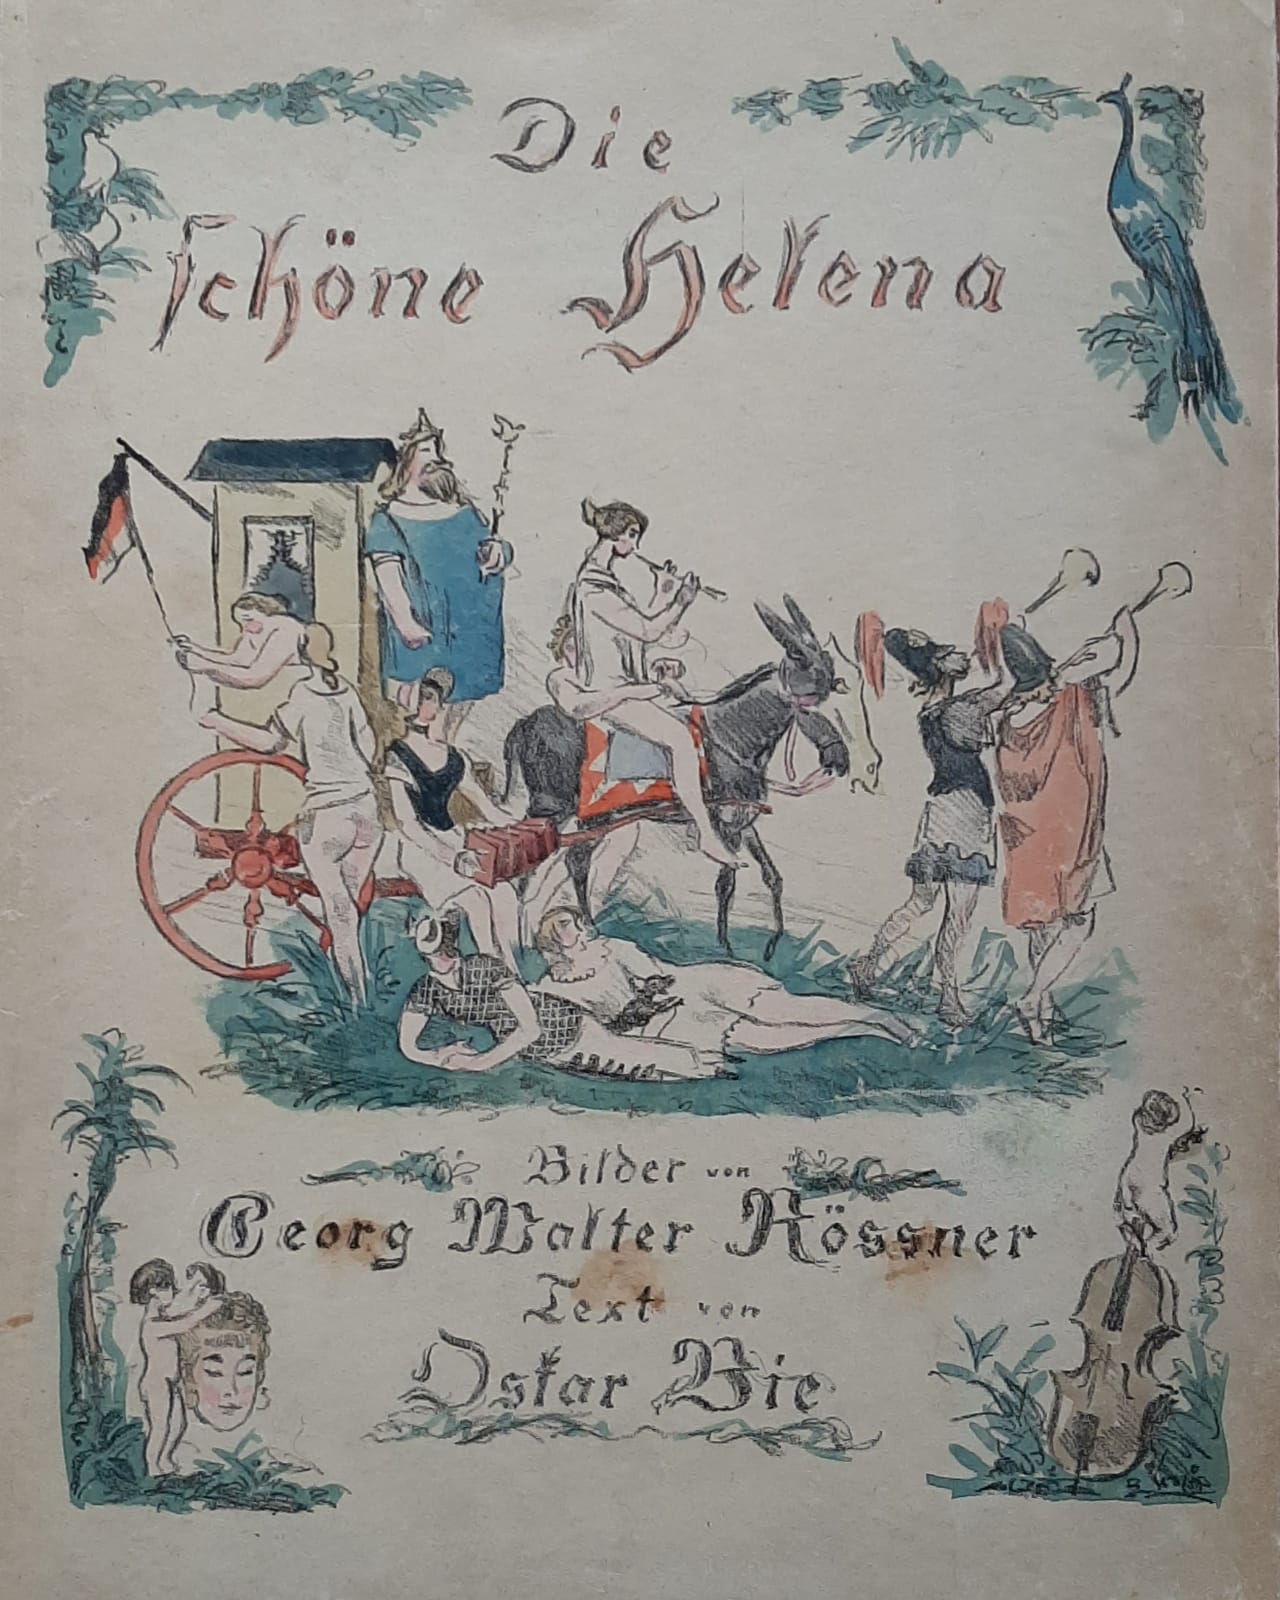 Bie, Oskar -Buch-"Die schöne Helena" Buch mit Original-Farblithos von Georg Walter Rössner (1885-